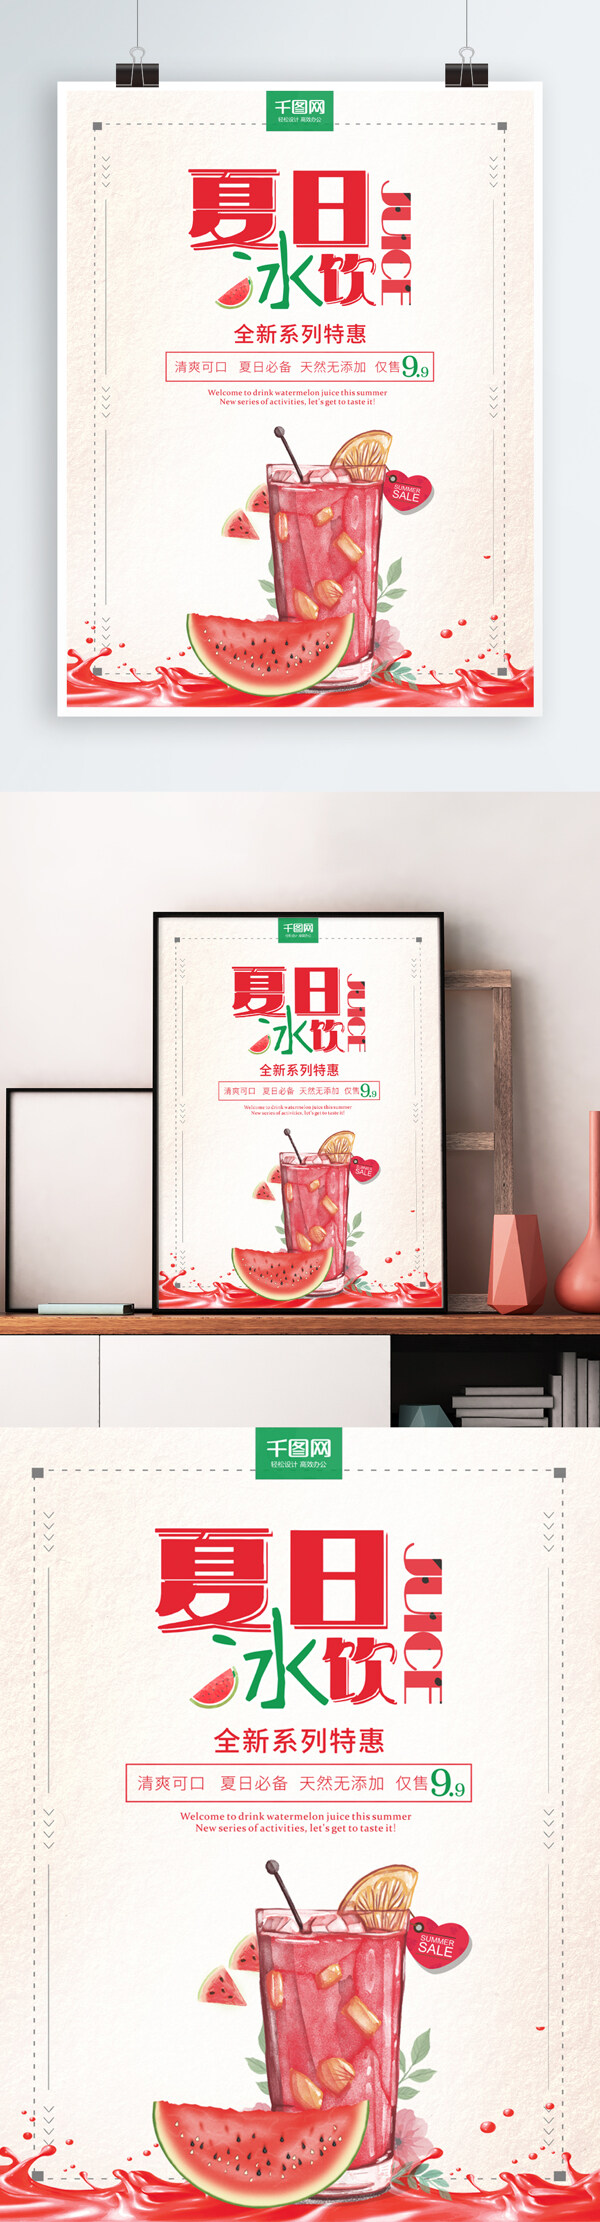 夏日西瓜汁冰爽饮料全新系列促销海报